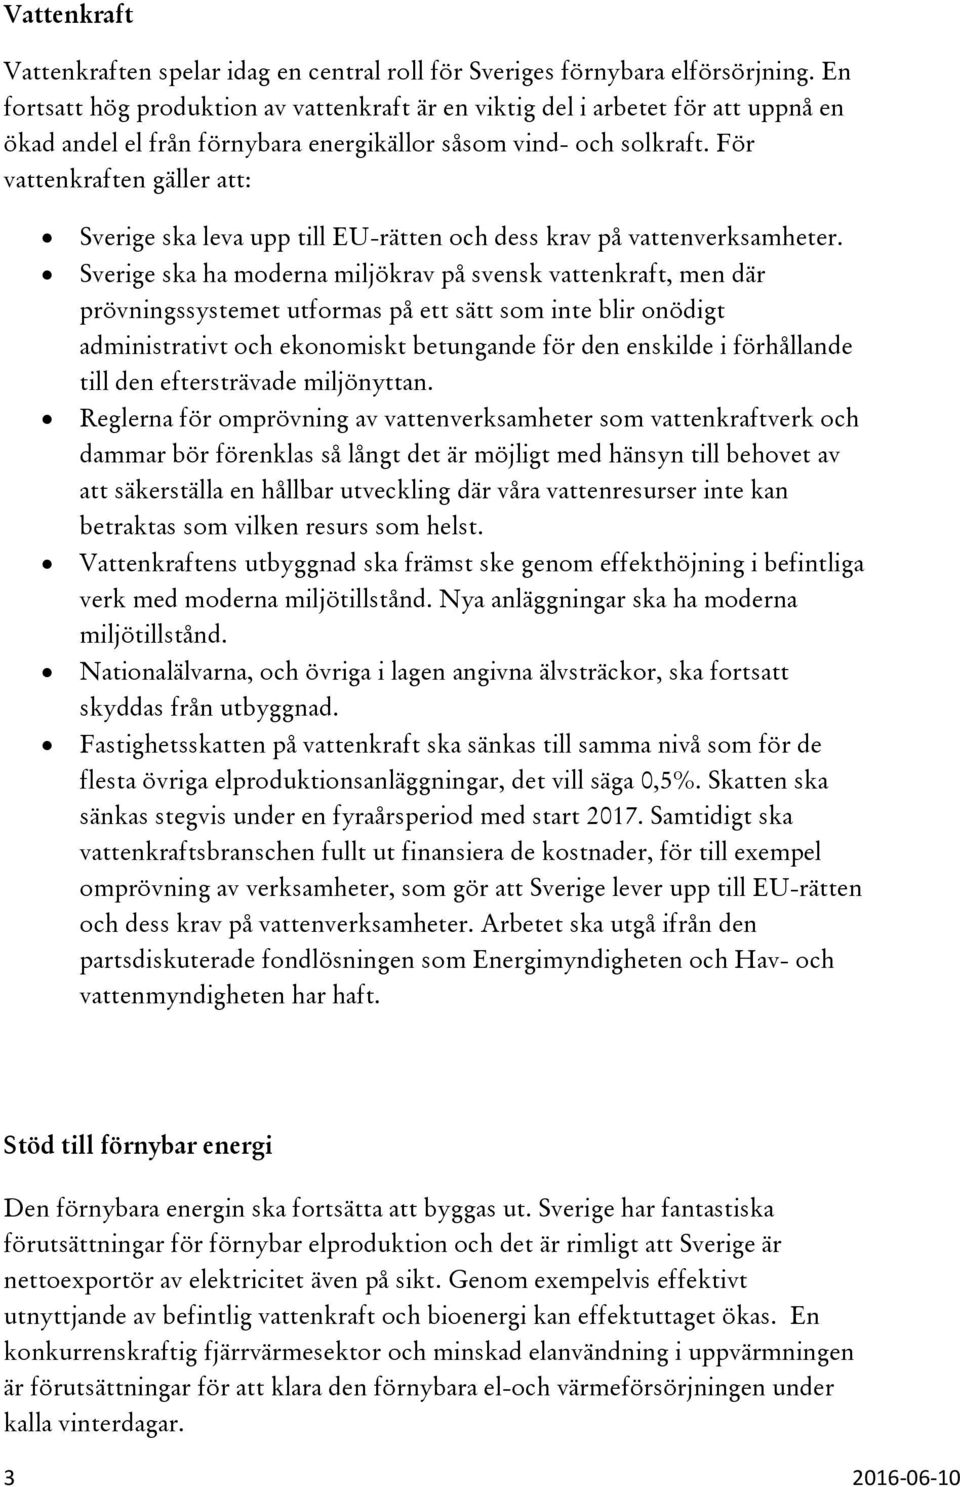 För vattenkraften gäller att: Sverige ska leva upp till EU-rätten och dess krav på vattenverksamheter.